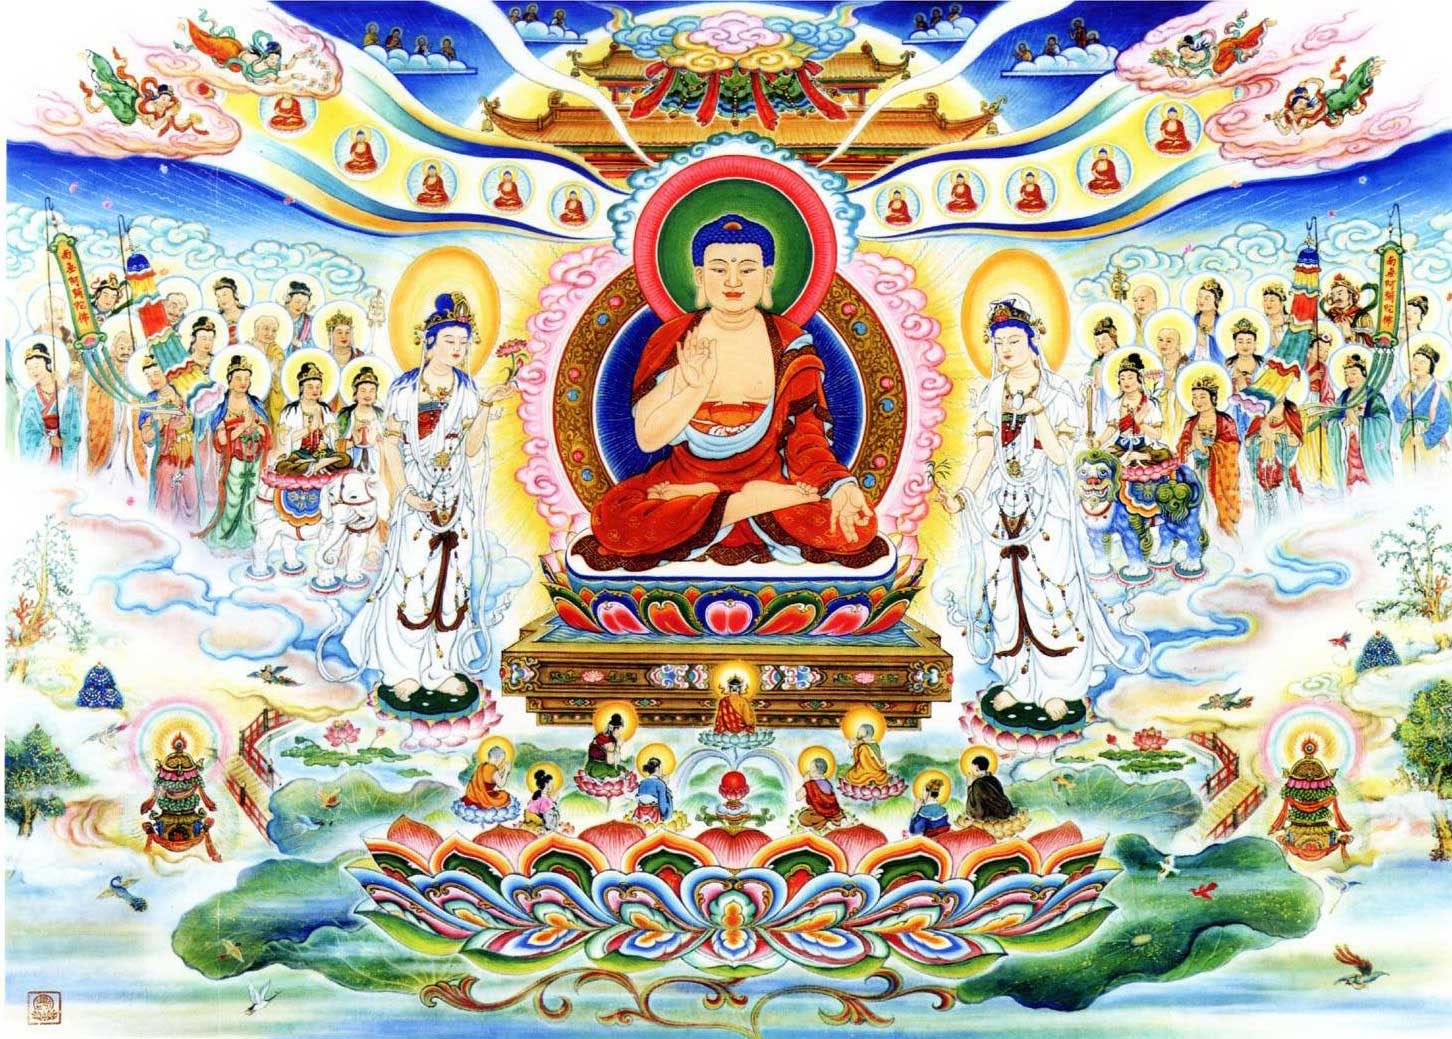 Hình ảnh Phật: Những hình ảnh về Phật luôn mang đến niềm an yên và bình tâm cho những người xem. Hãy chiêm ngưỡng những bức tranh về Đức Phật và tìm hiểu về những thông điệp ý nghĩa mà chúng mang lại.